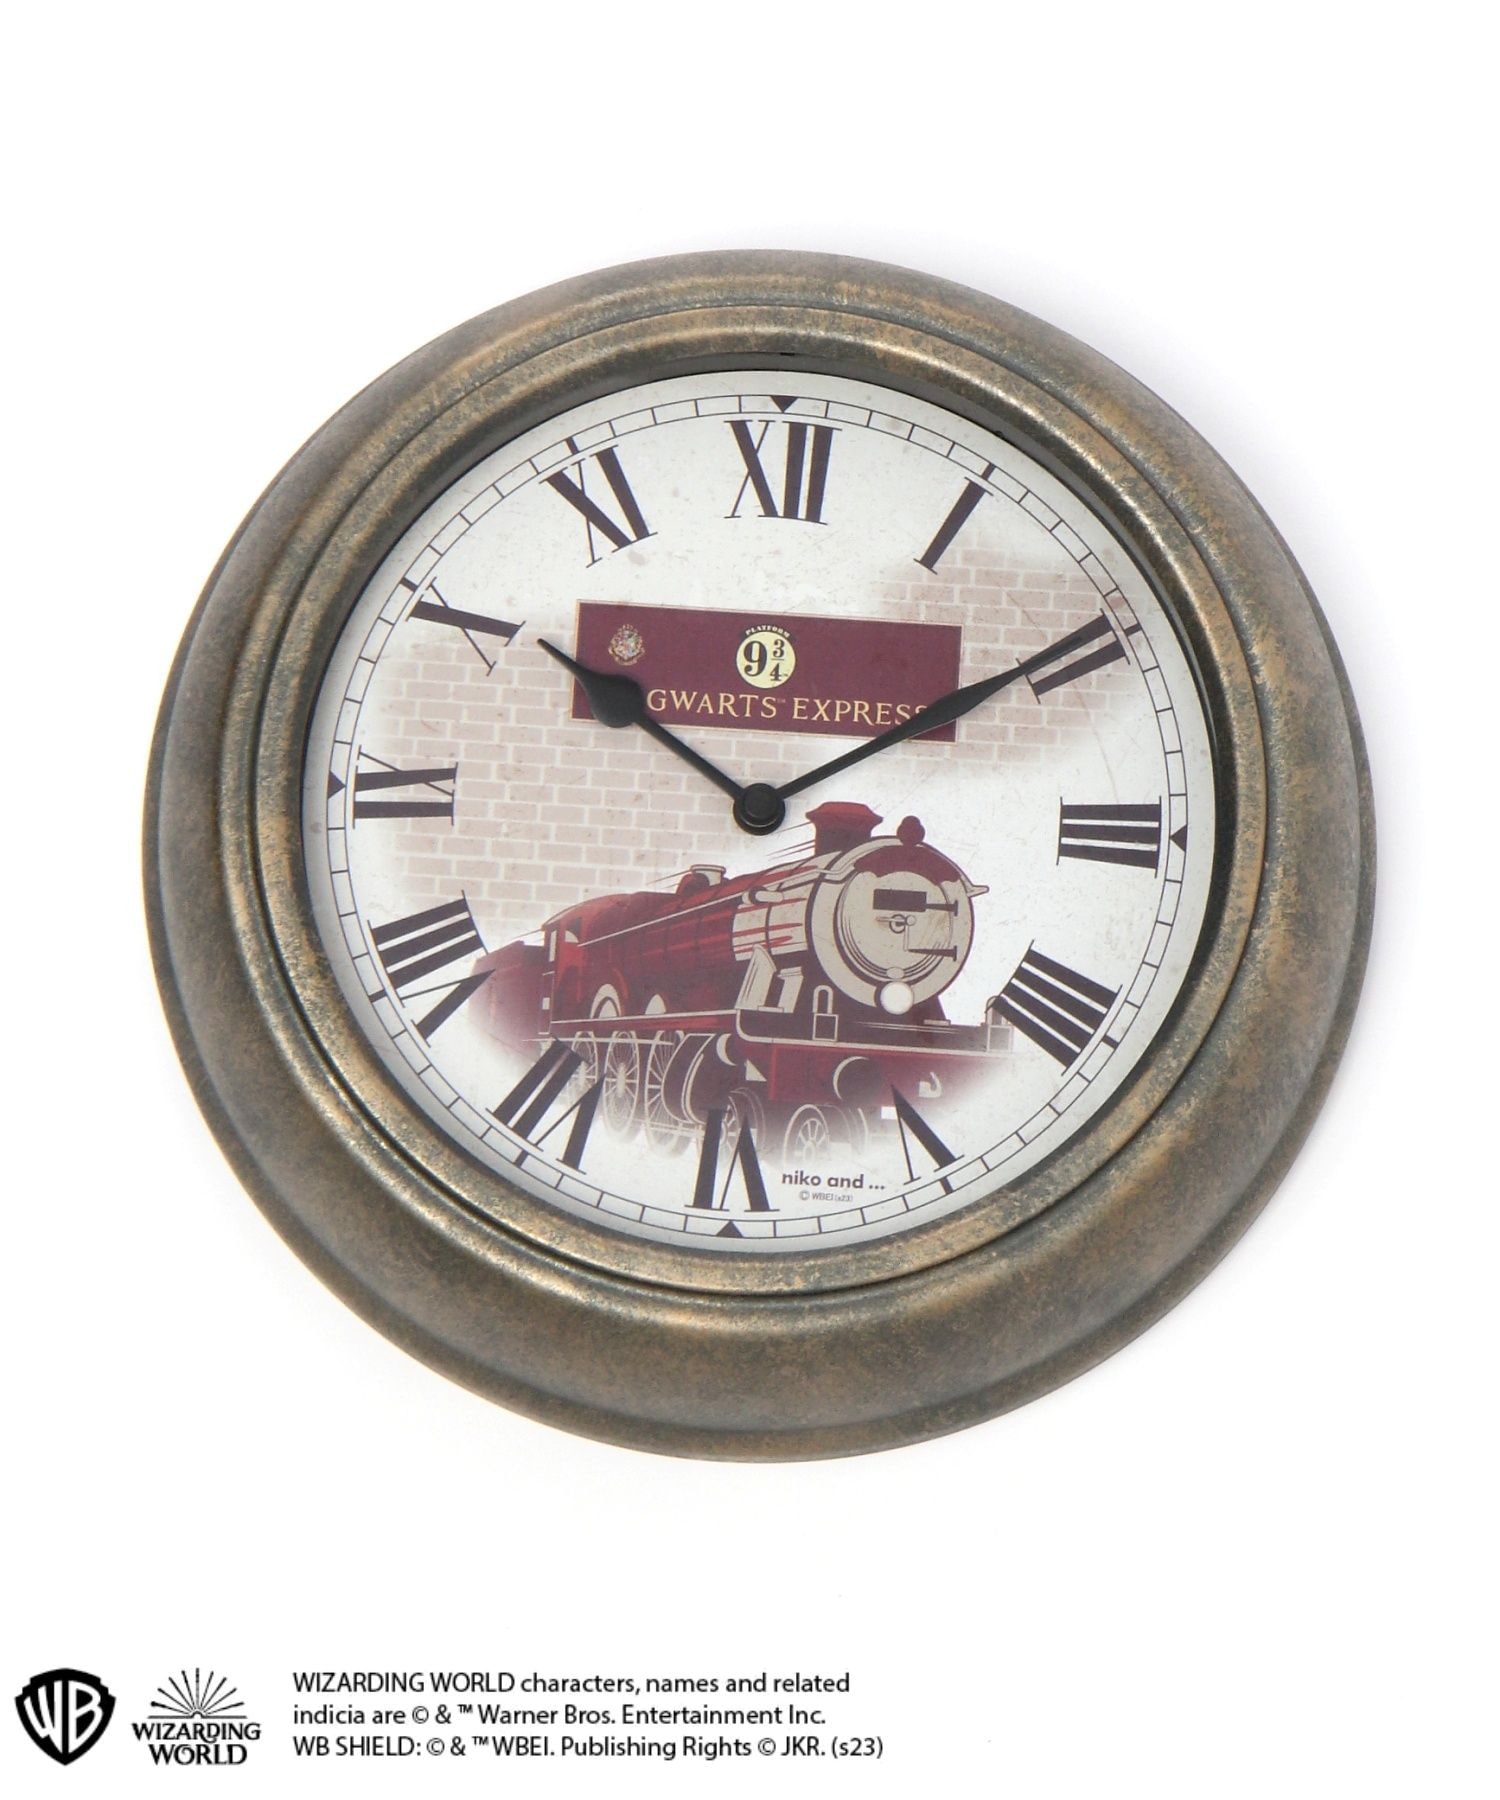 ハリーポッター ニコアンド コラボ 壁掛け時計 - インテリア時計